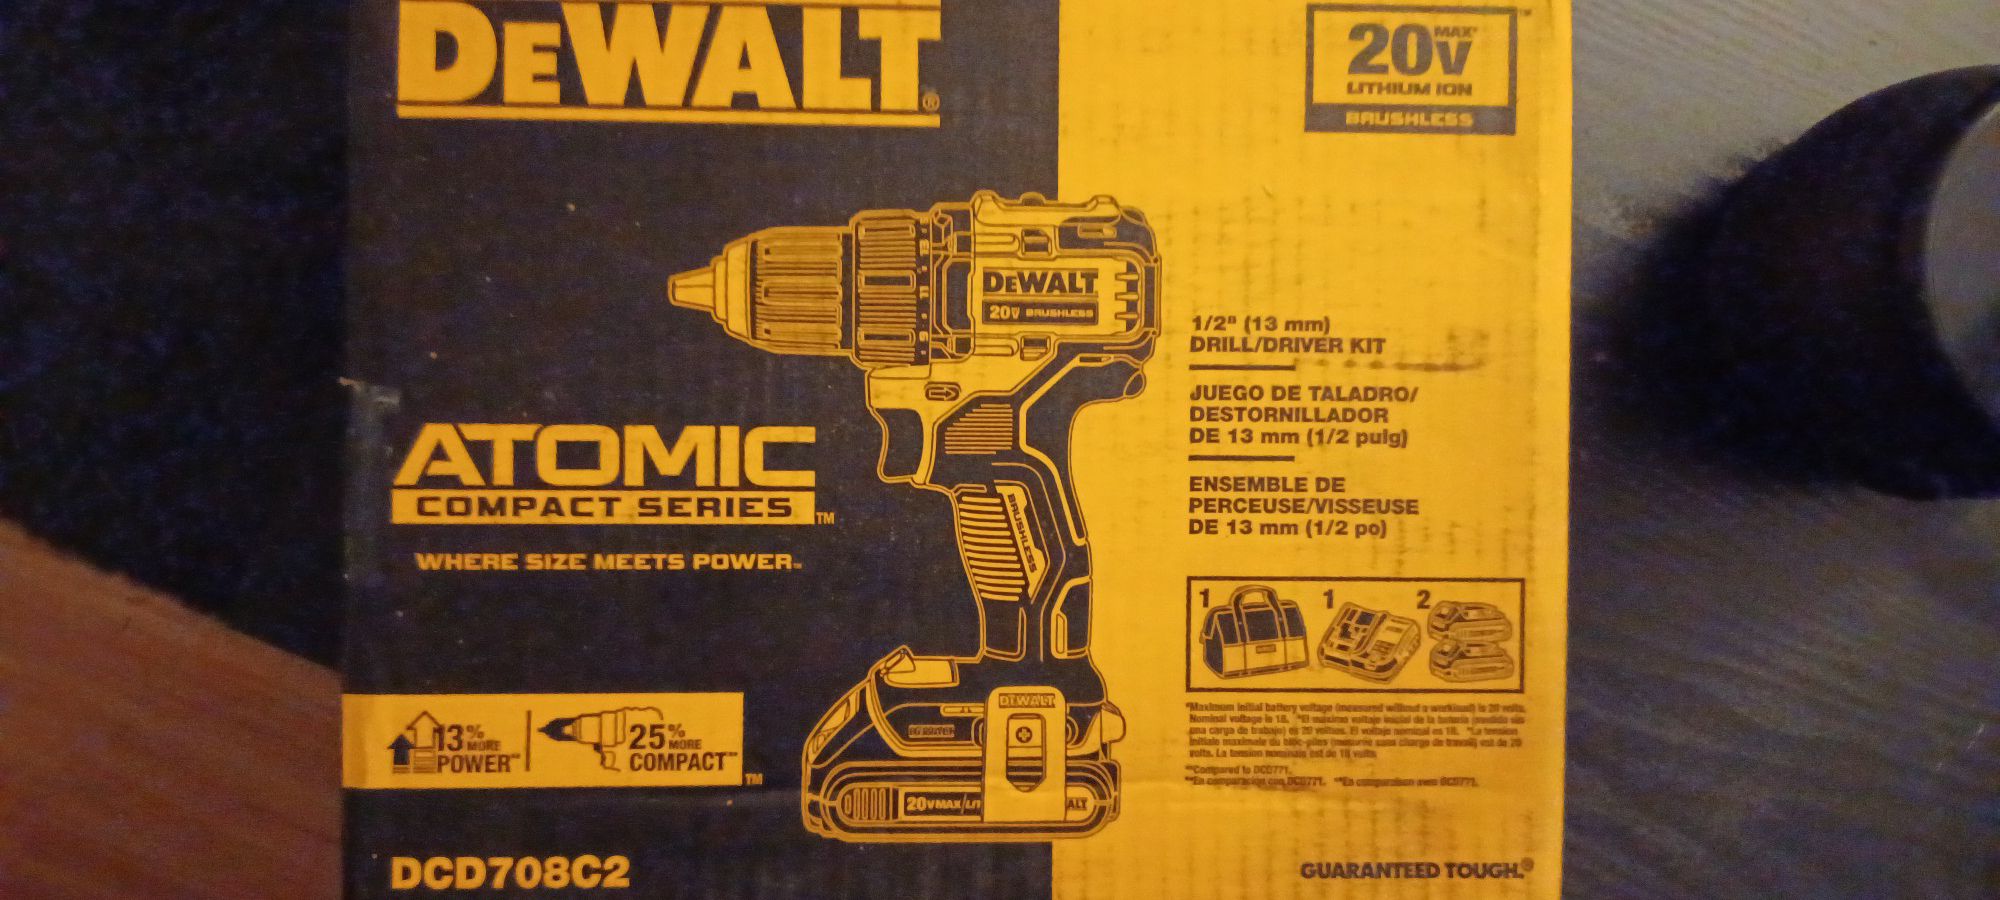 New Dewalt 20 Volt Atomic Series Cordless 1/2 Inch Drill  Kit